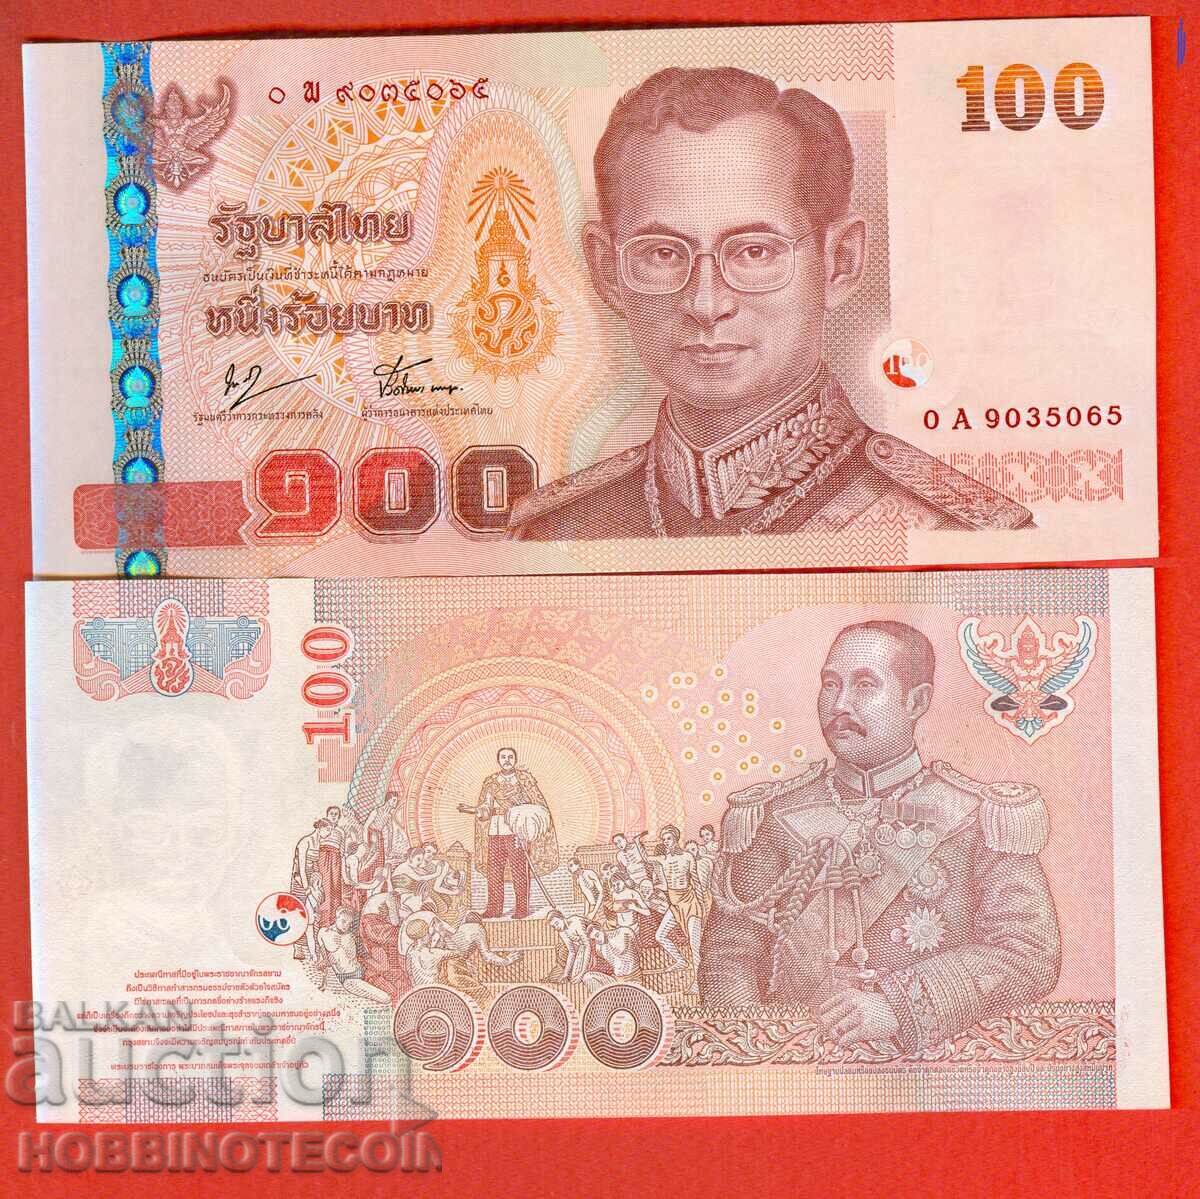 THAILAND 100 BATA NEW issue 2005 - under 76 NEW UNC